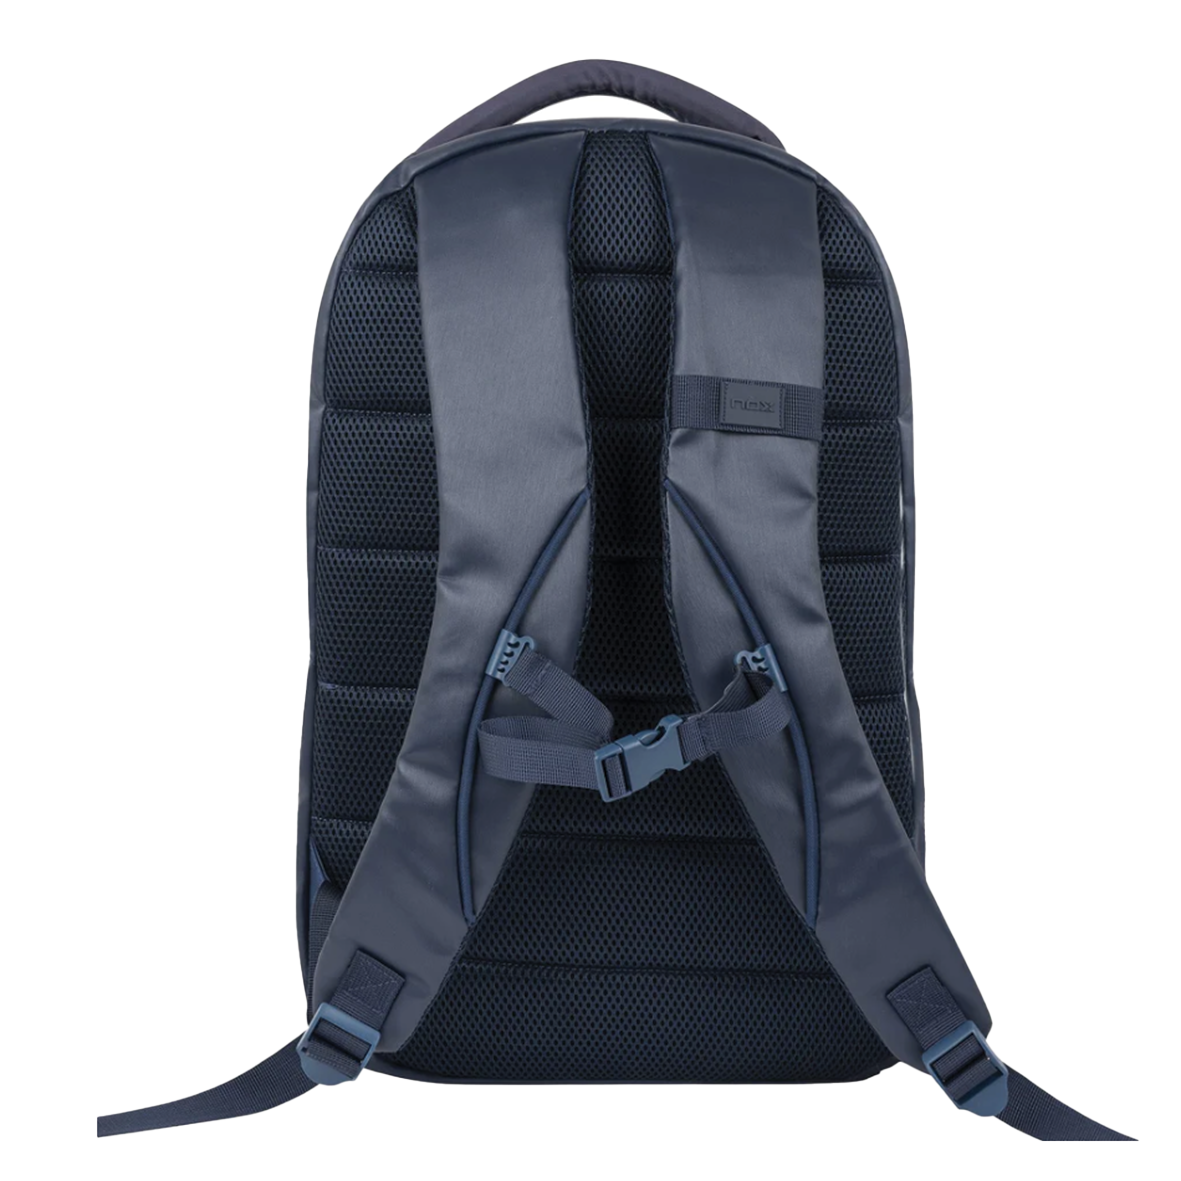 NOX Navy Pro Series Backpack